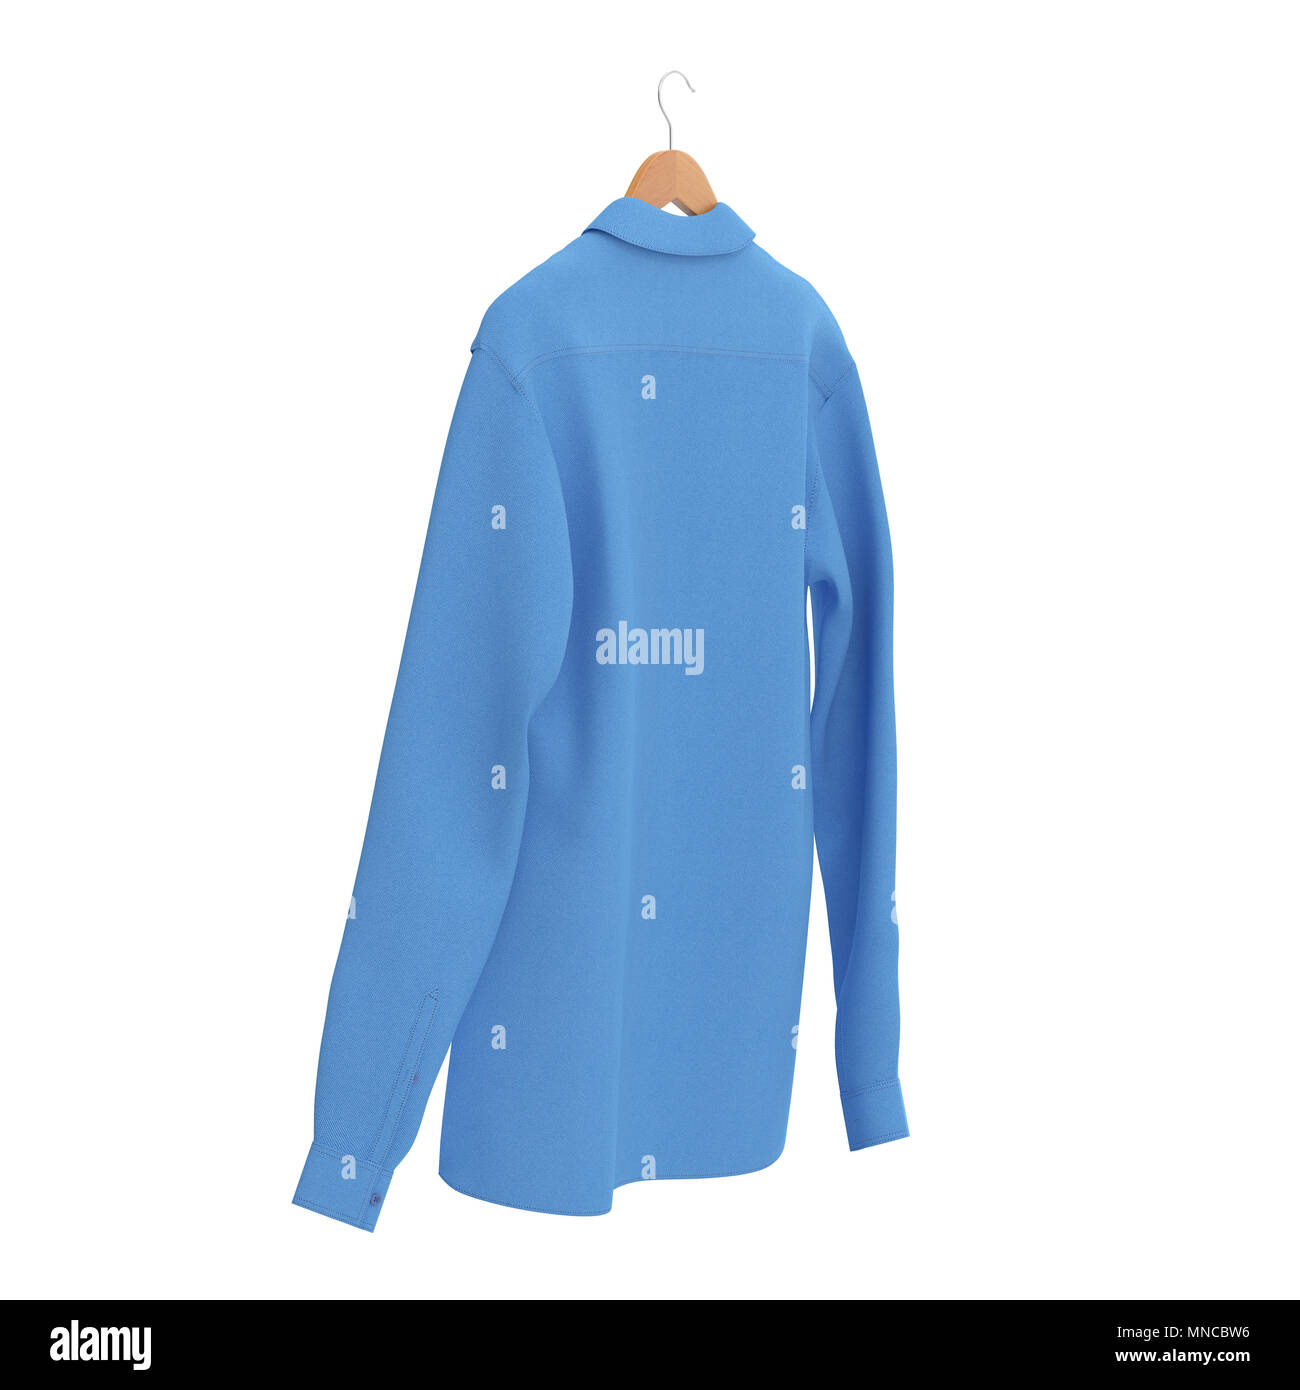 Blue Shirt On Hanger on white background. 3D illustration Stock Photo